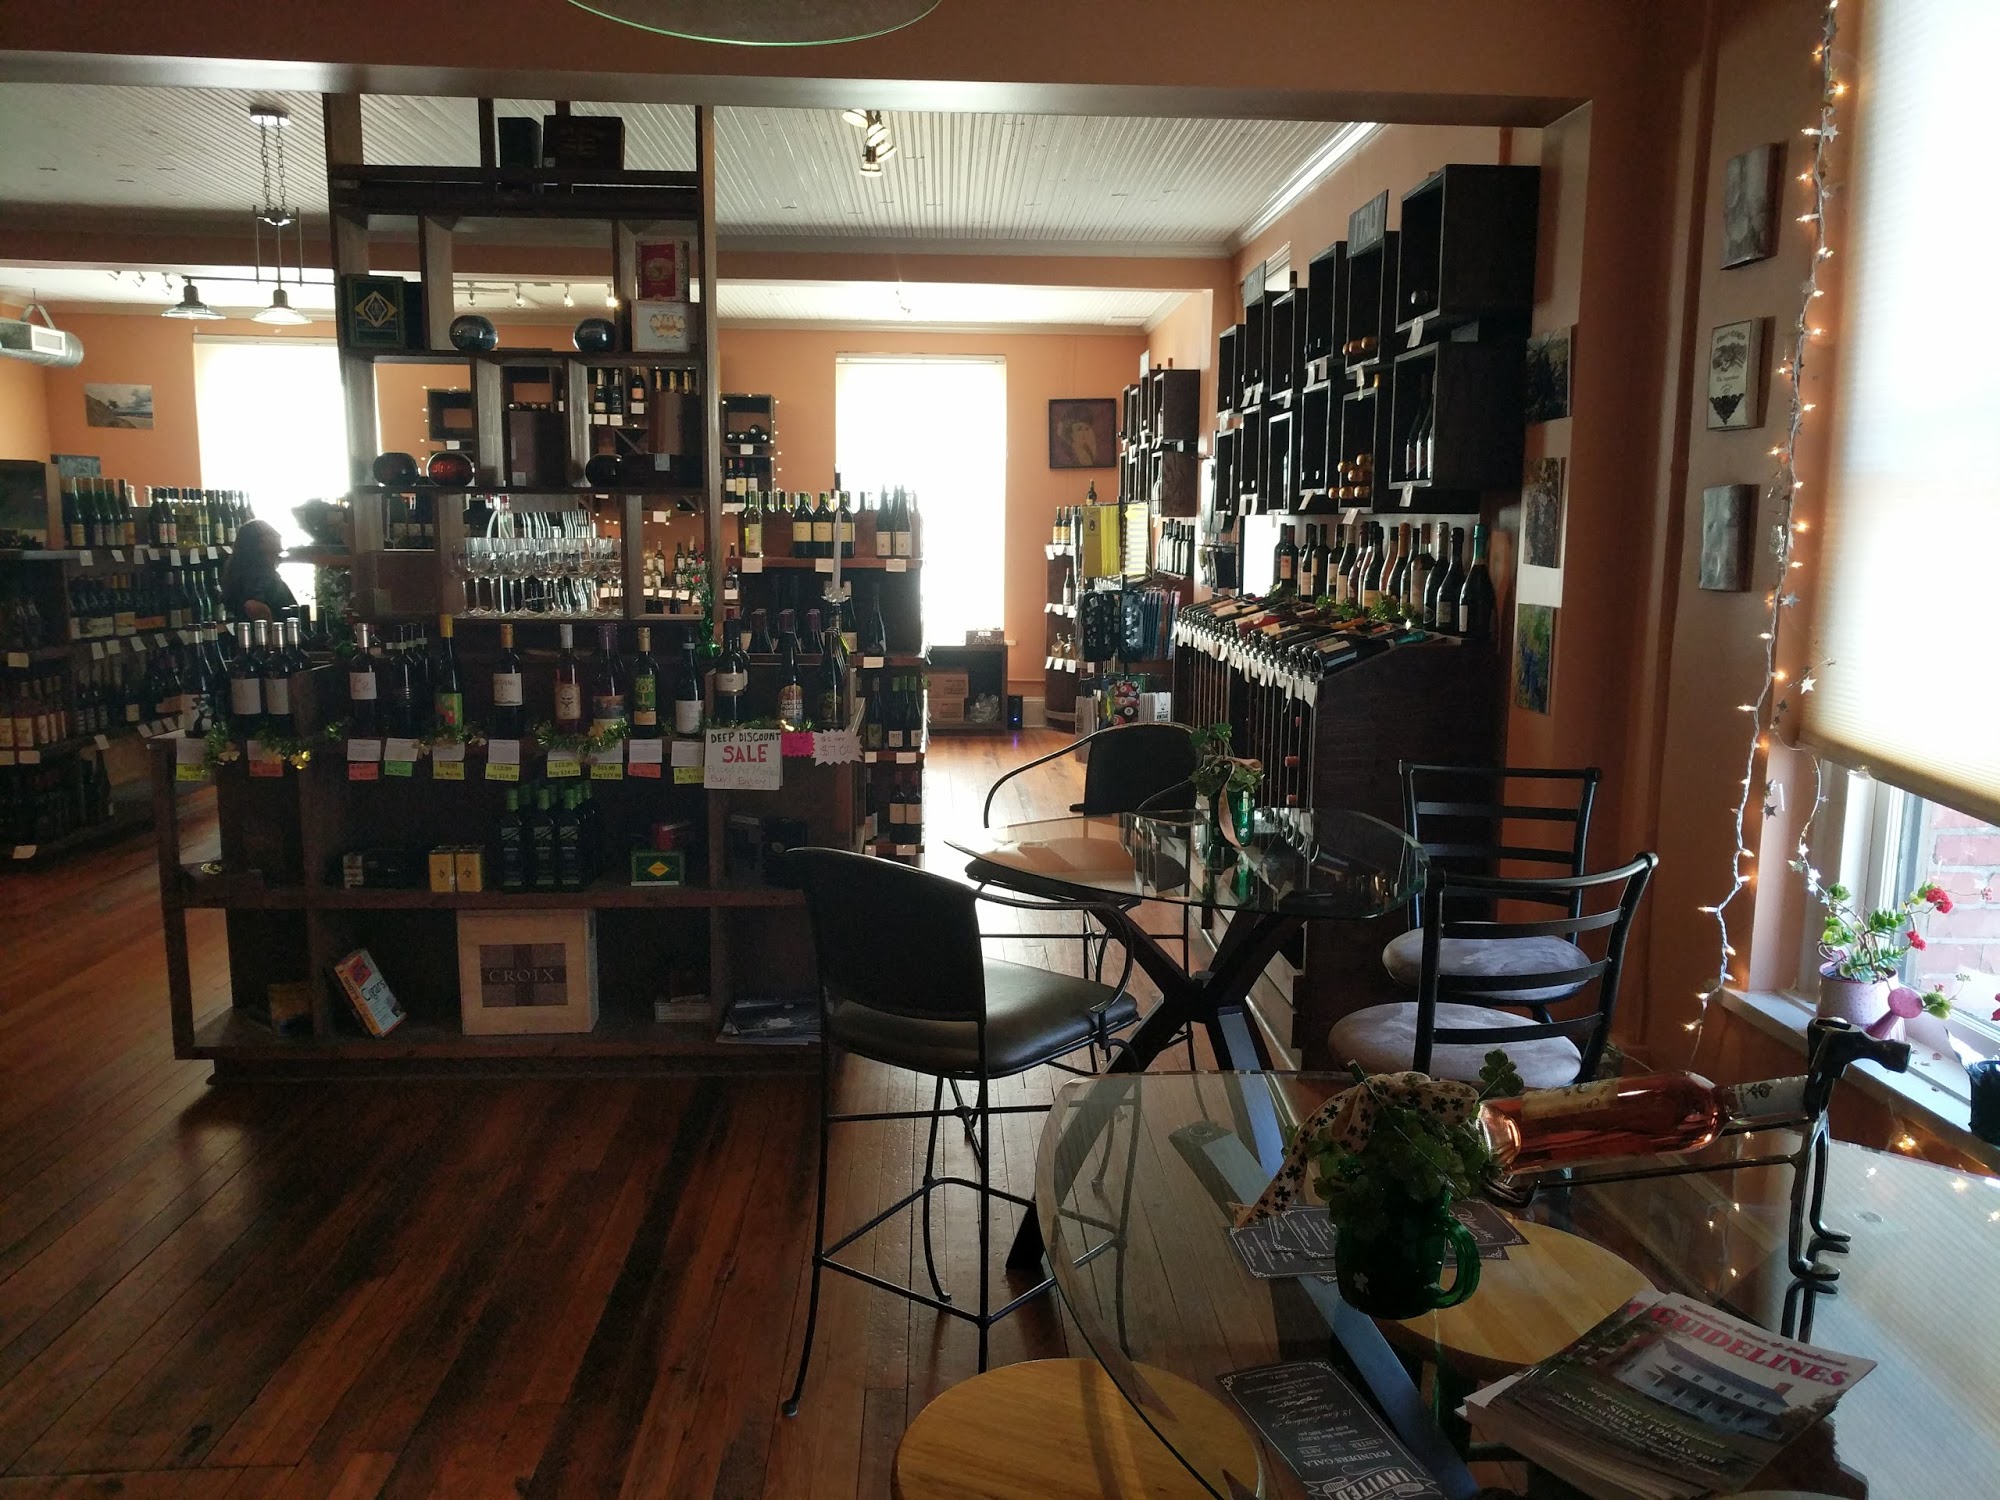 Vino Wine Shop